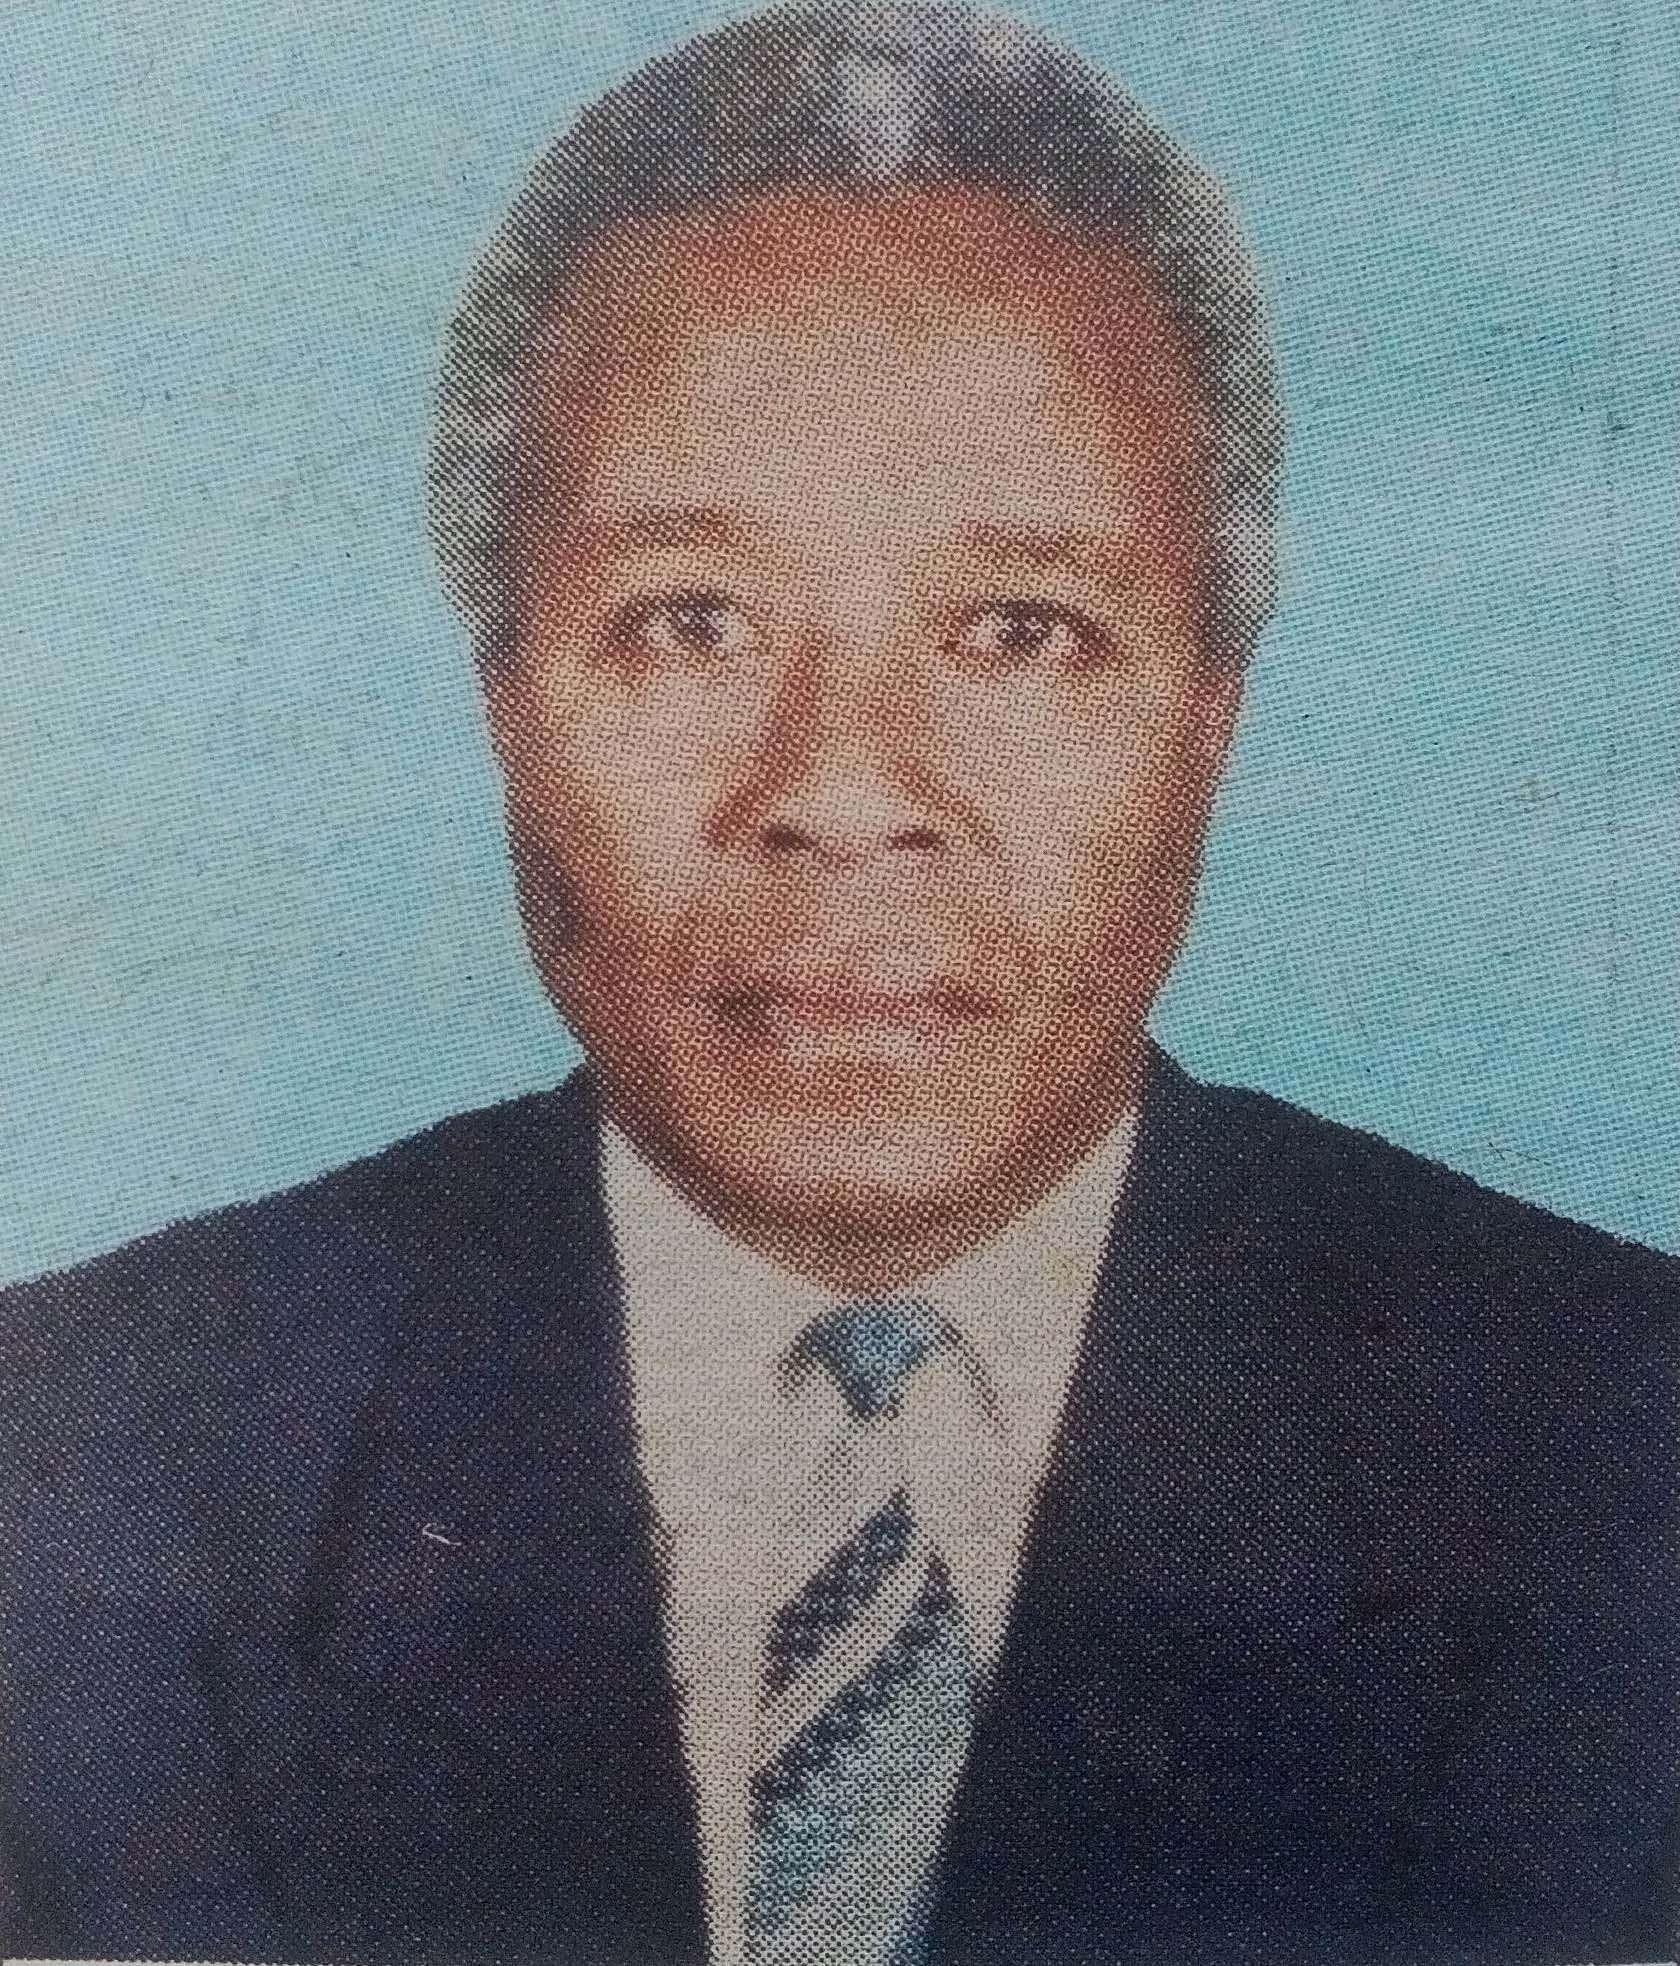 Obituary Image of James Gichuru Kabiru